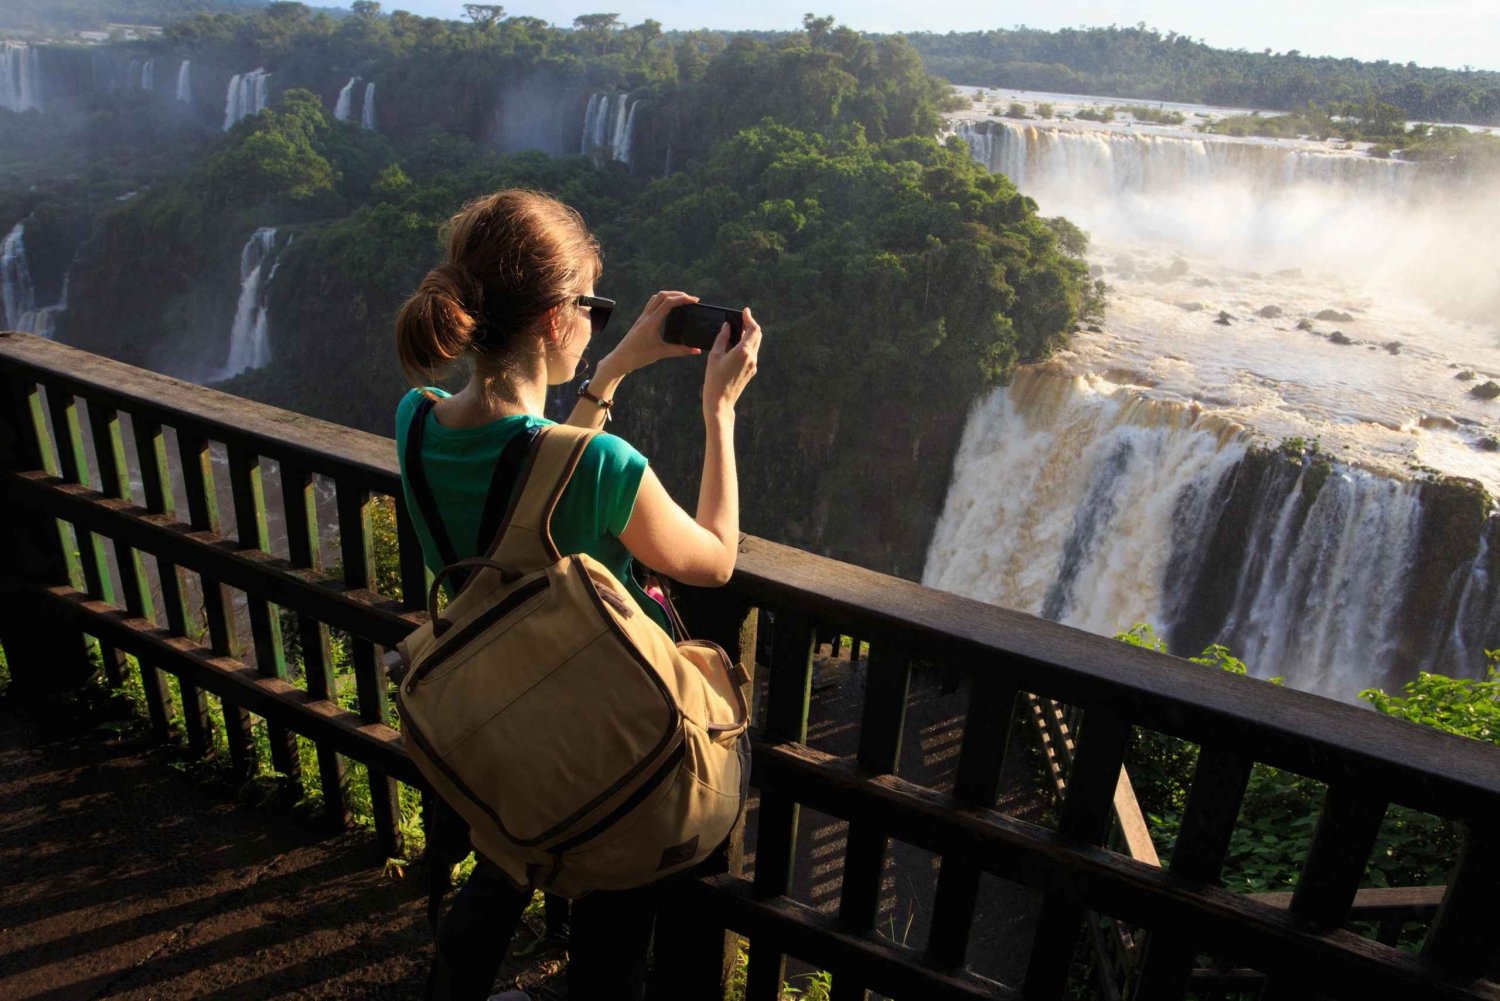 Puerto Iguazu: Excursão às Cataratas do Iguaçu com passeio de barco e caminhão safári